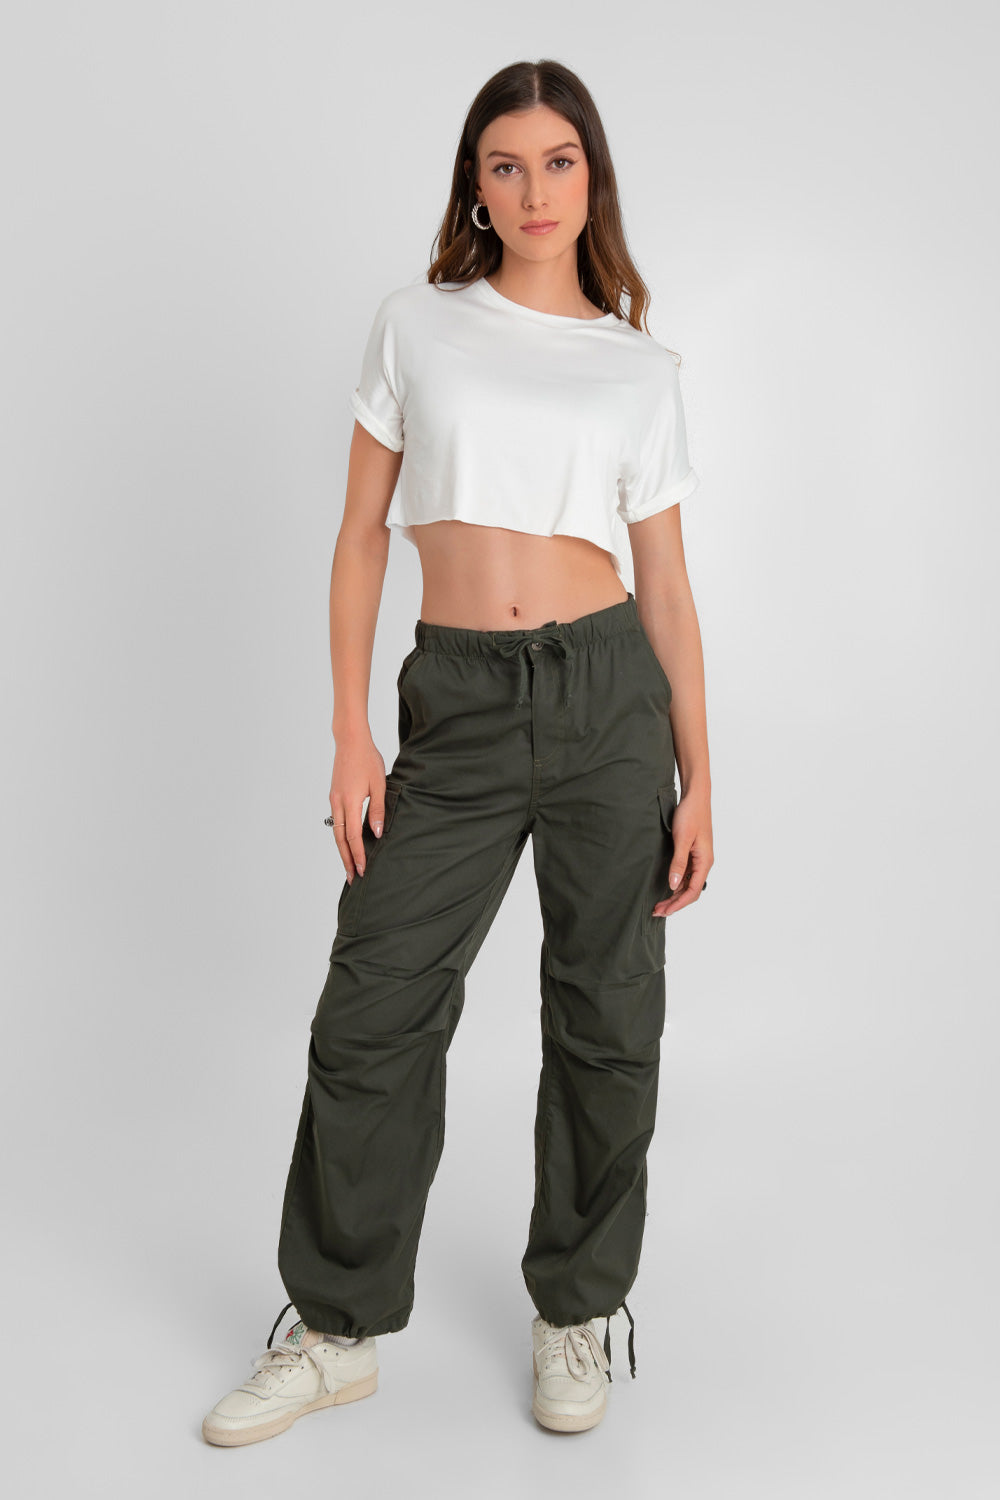 IAMHOTTY-pantalones Cargo verde claro con múltiples bolsillos para